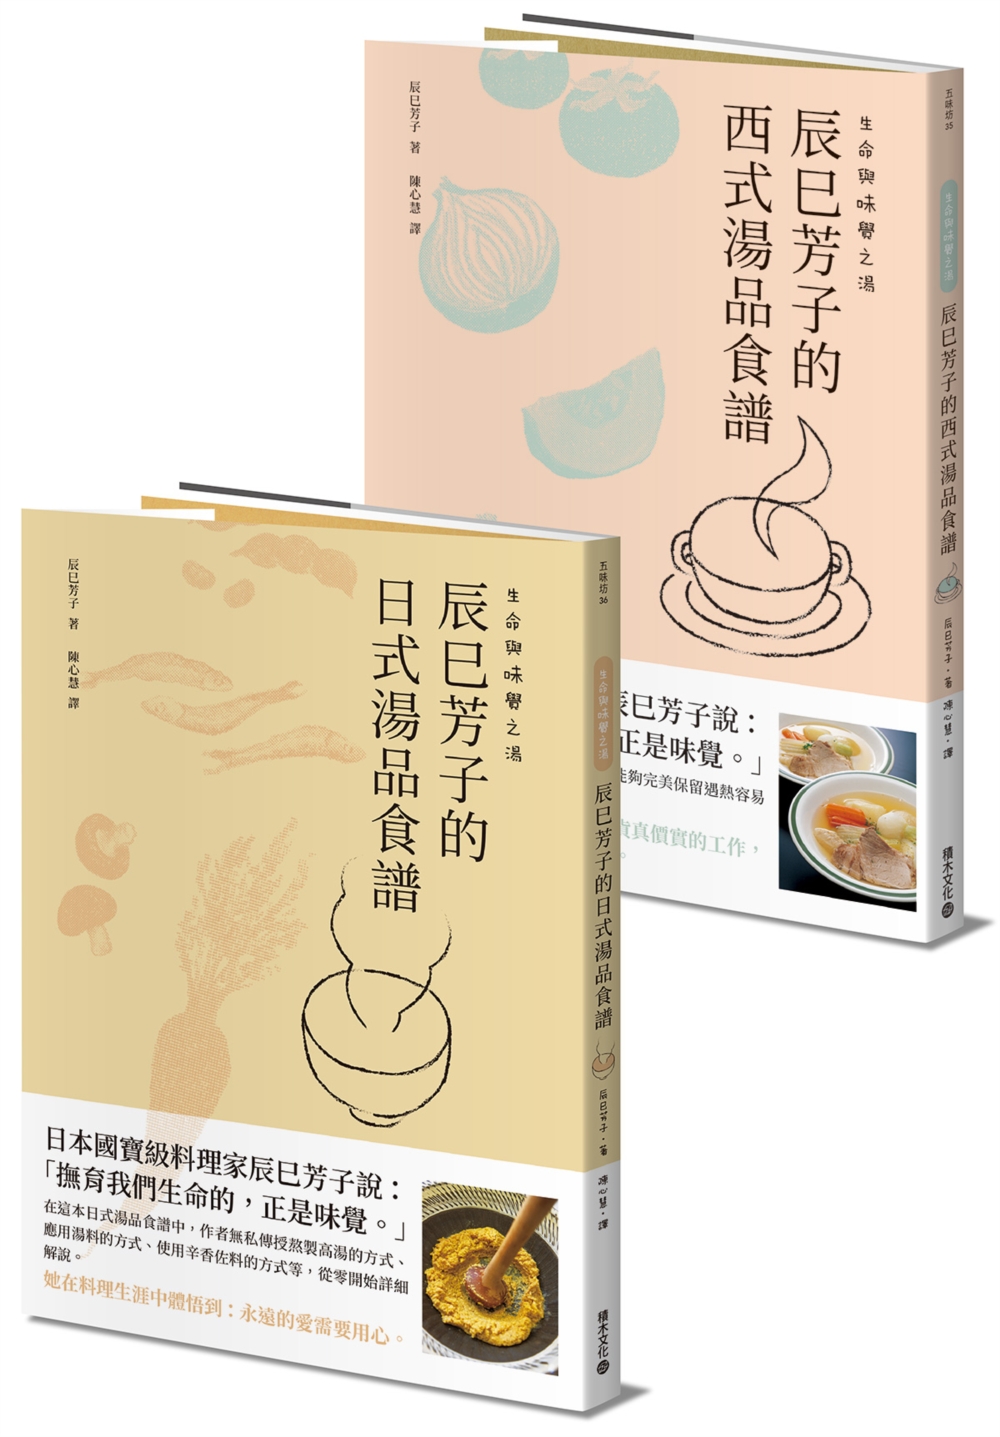 生命與味覺之湯-辰巳芳子的日式與西式湯品食譜(乙套二冊)